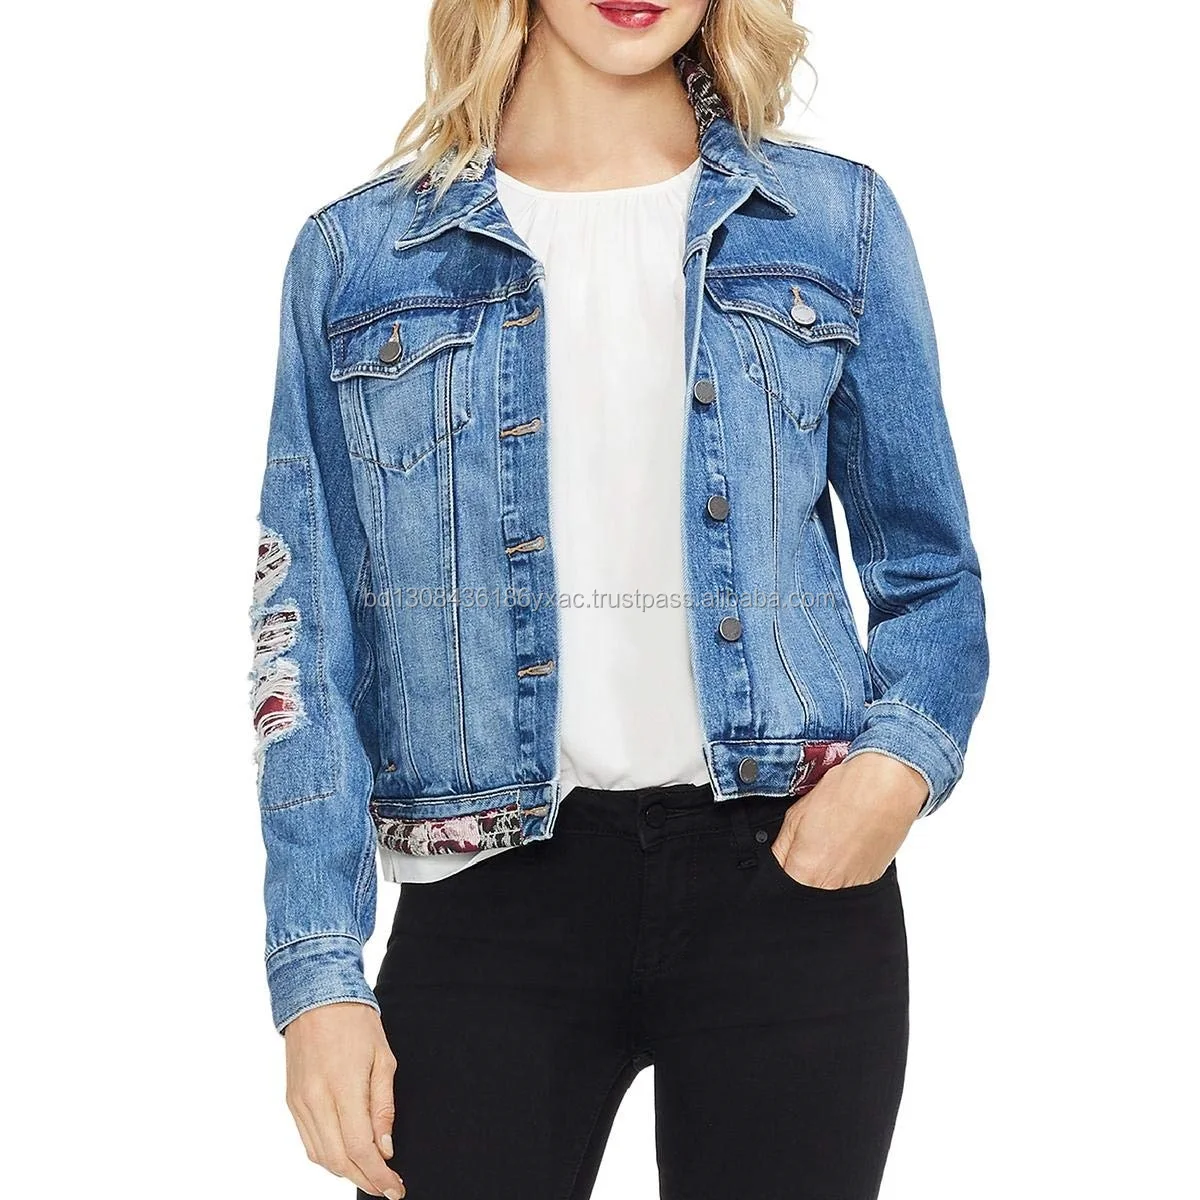 jeans jacket women sale